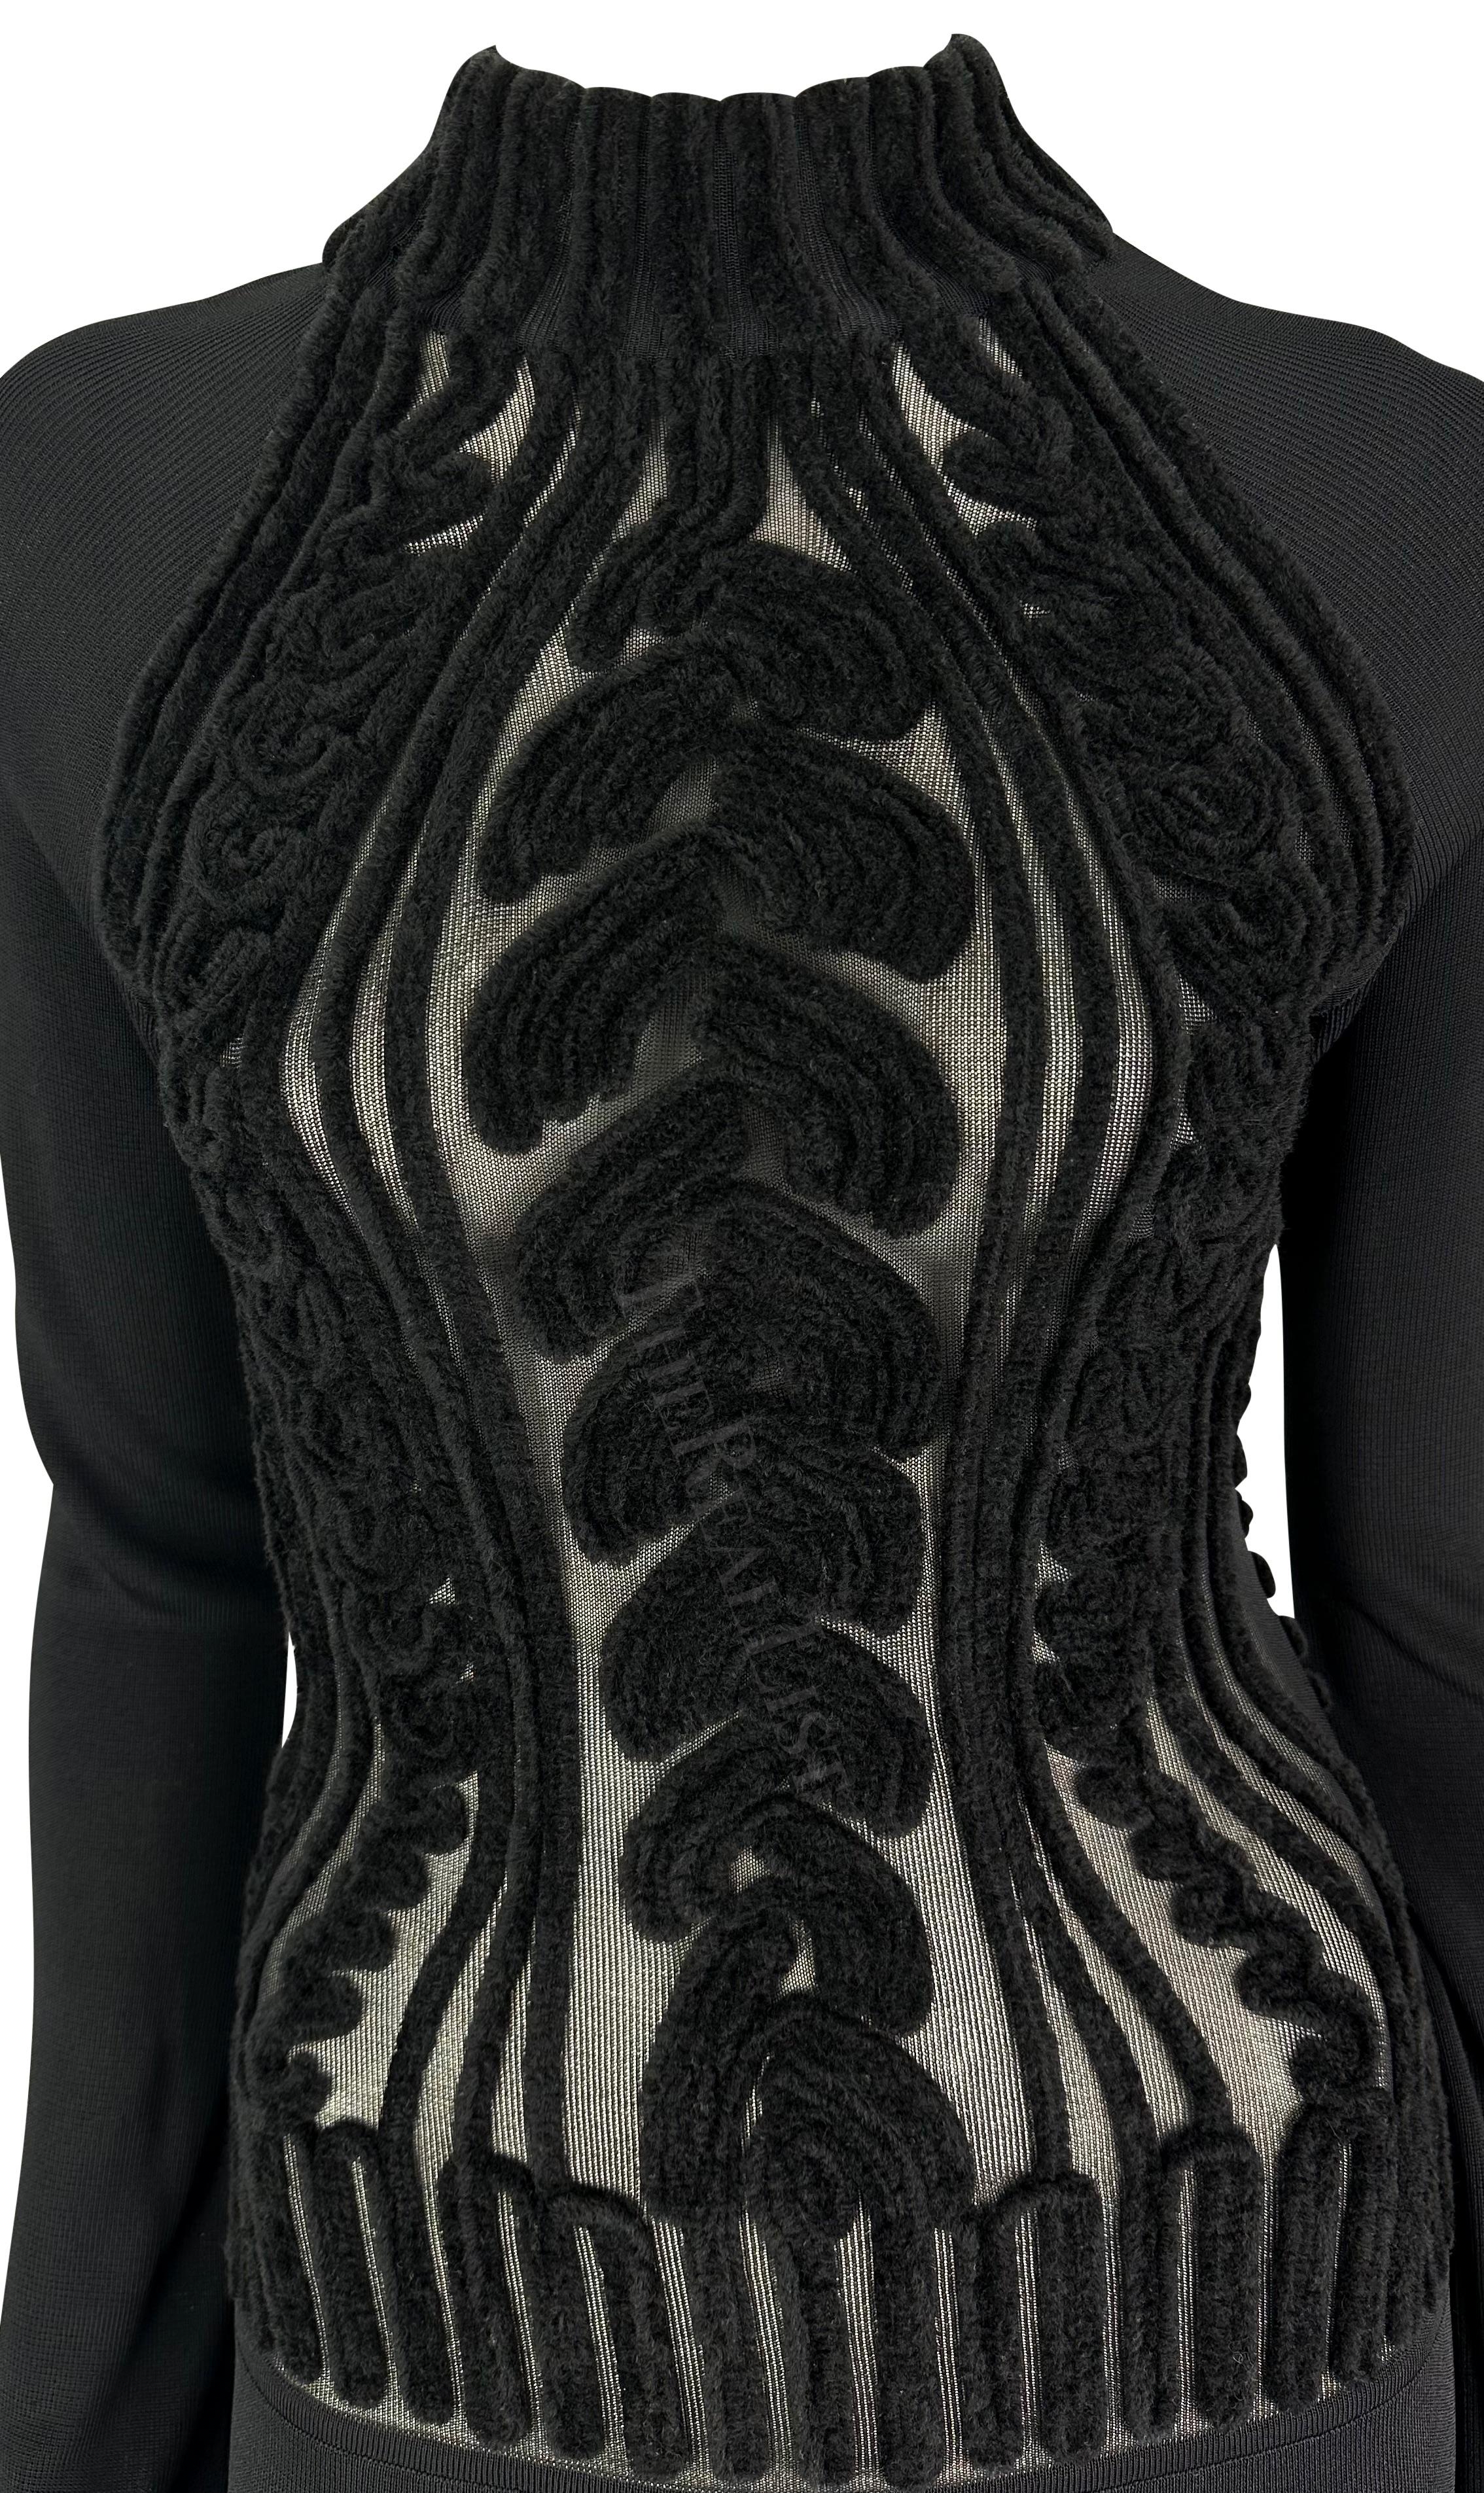 Présentation d'une superbe robe à manches longues en maille noire Thierry Mugler, conçue par Manfred Mugler. Datant du milieu des années 1990, cette robe bodycon en tricot présente une encolure fantaisie et se distingue par un torse transparent avec